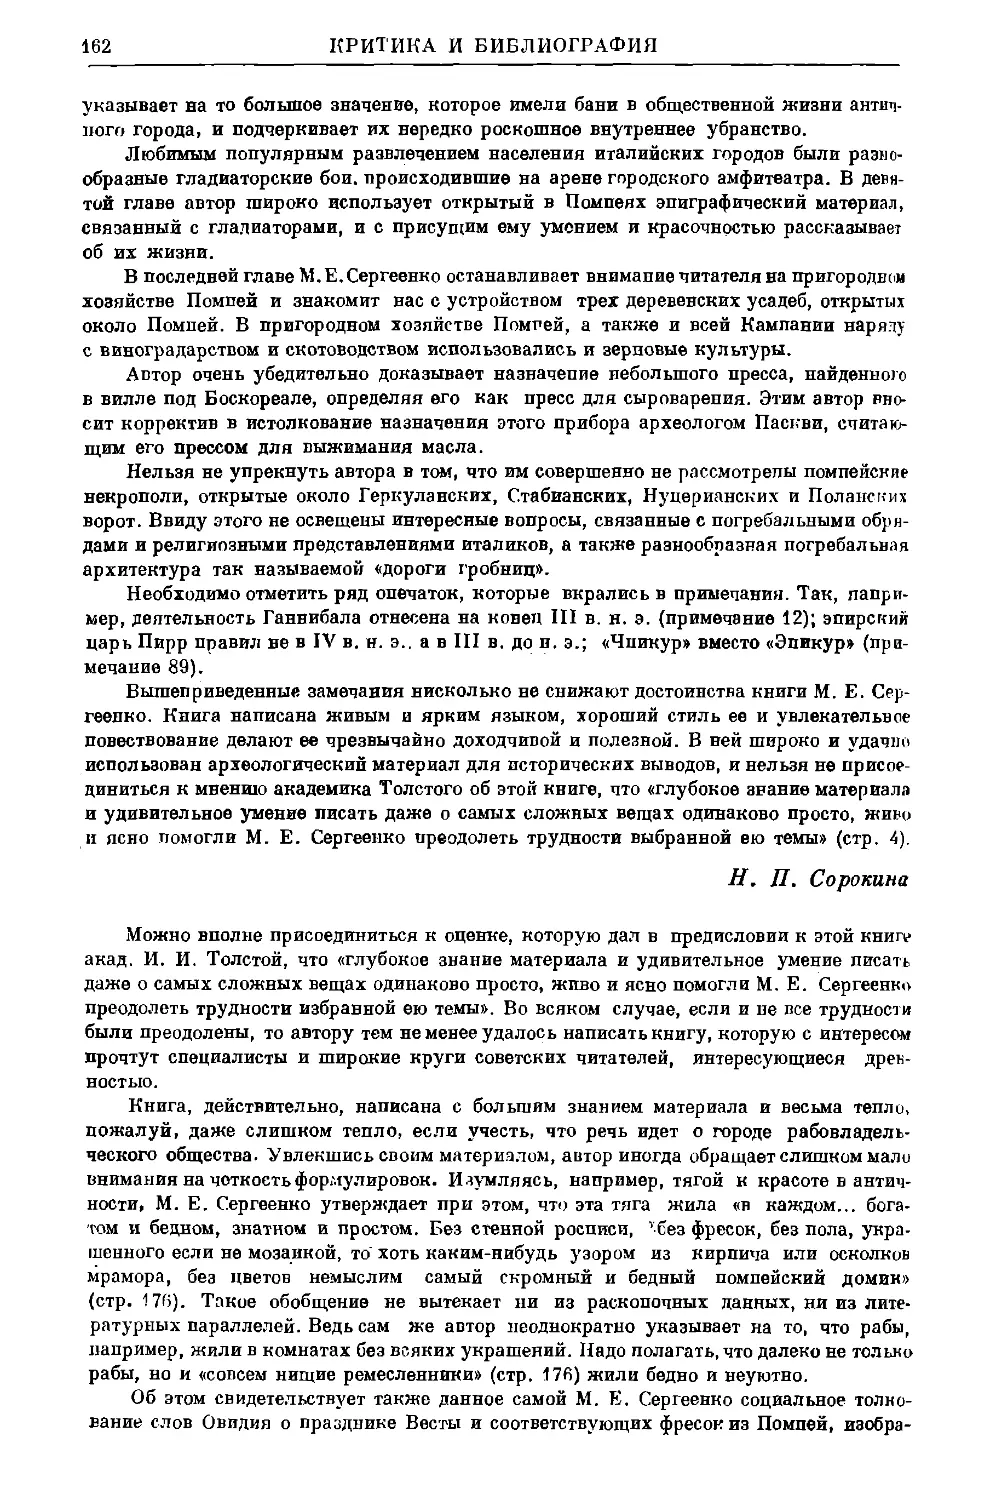 Тарков П.Н. – М.Е. Сергеенко. Помпеи. М.–Л., 1949